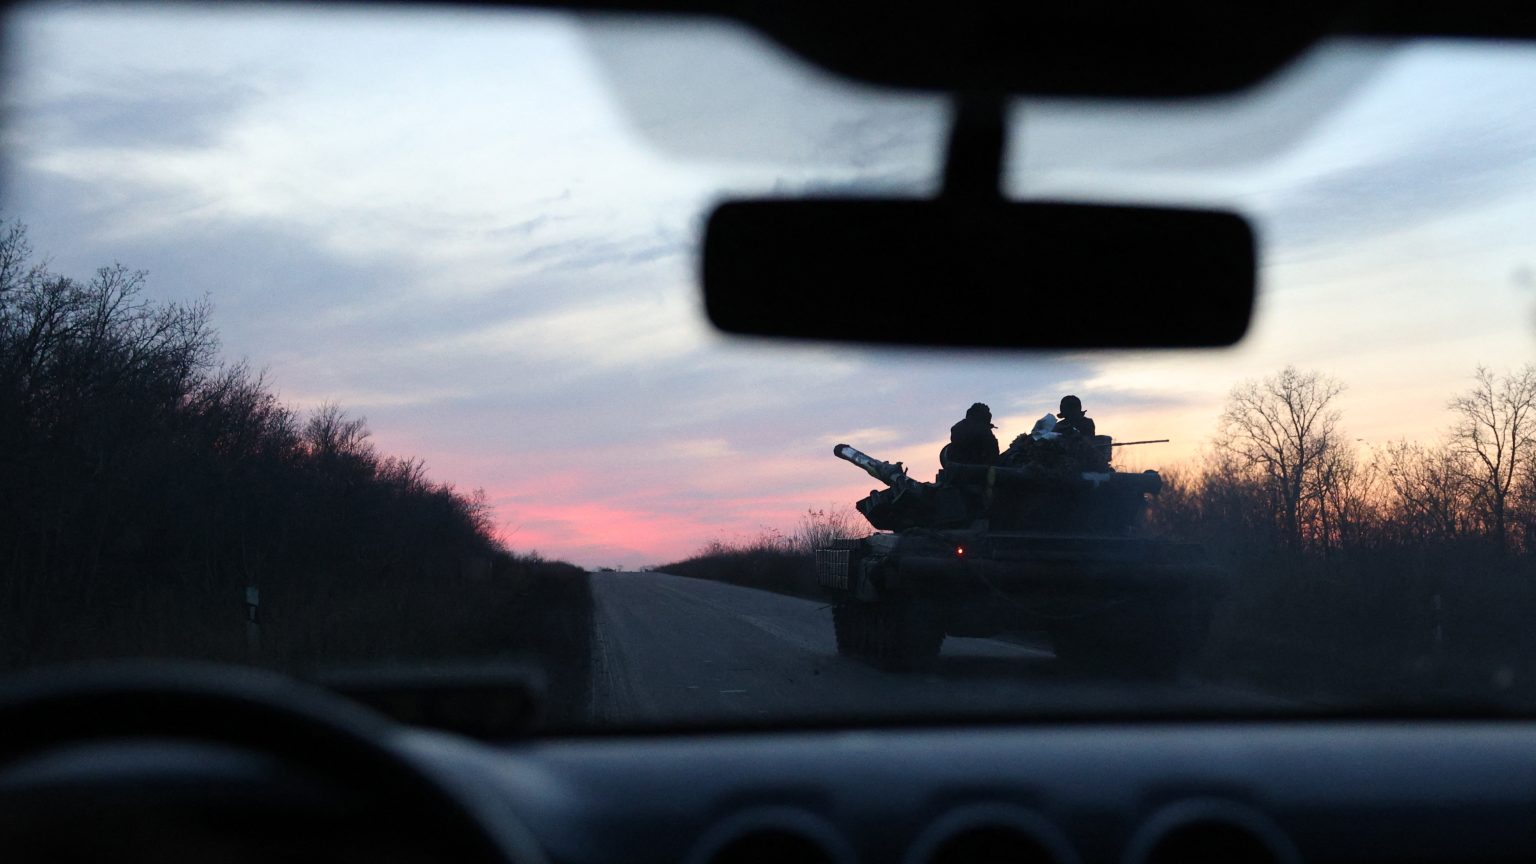 Oroszország elismerte, hogy az ukránok átkeltek a Dnyeperen de „a pokoli tüz” és halál vár rájuk